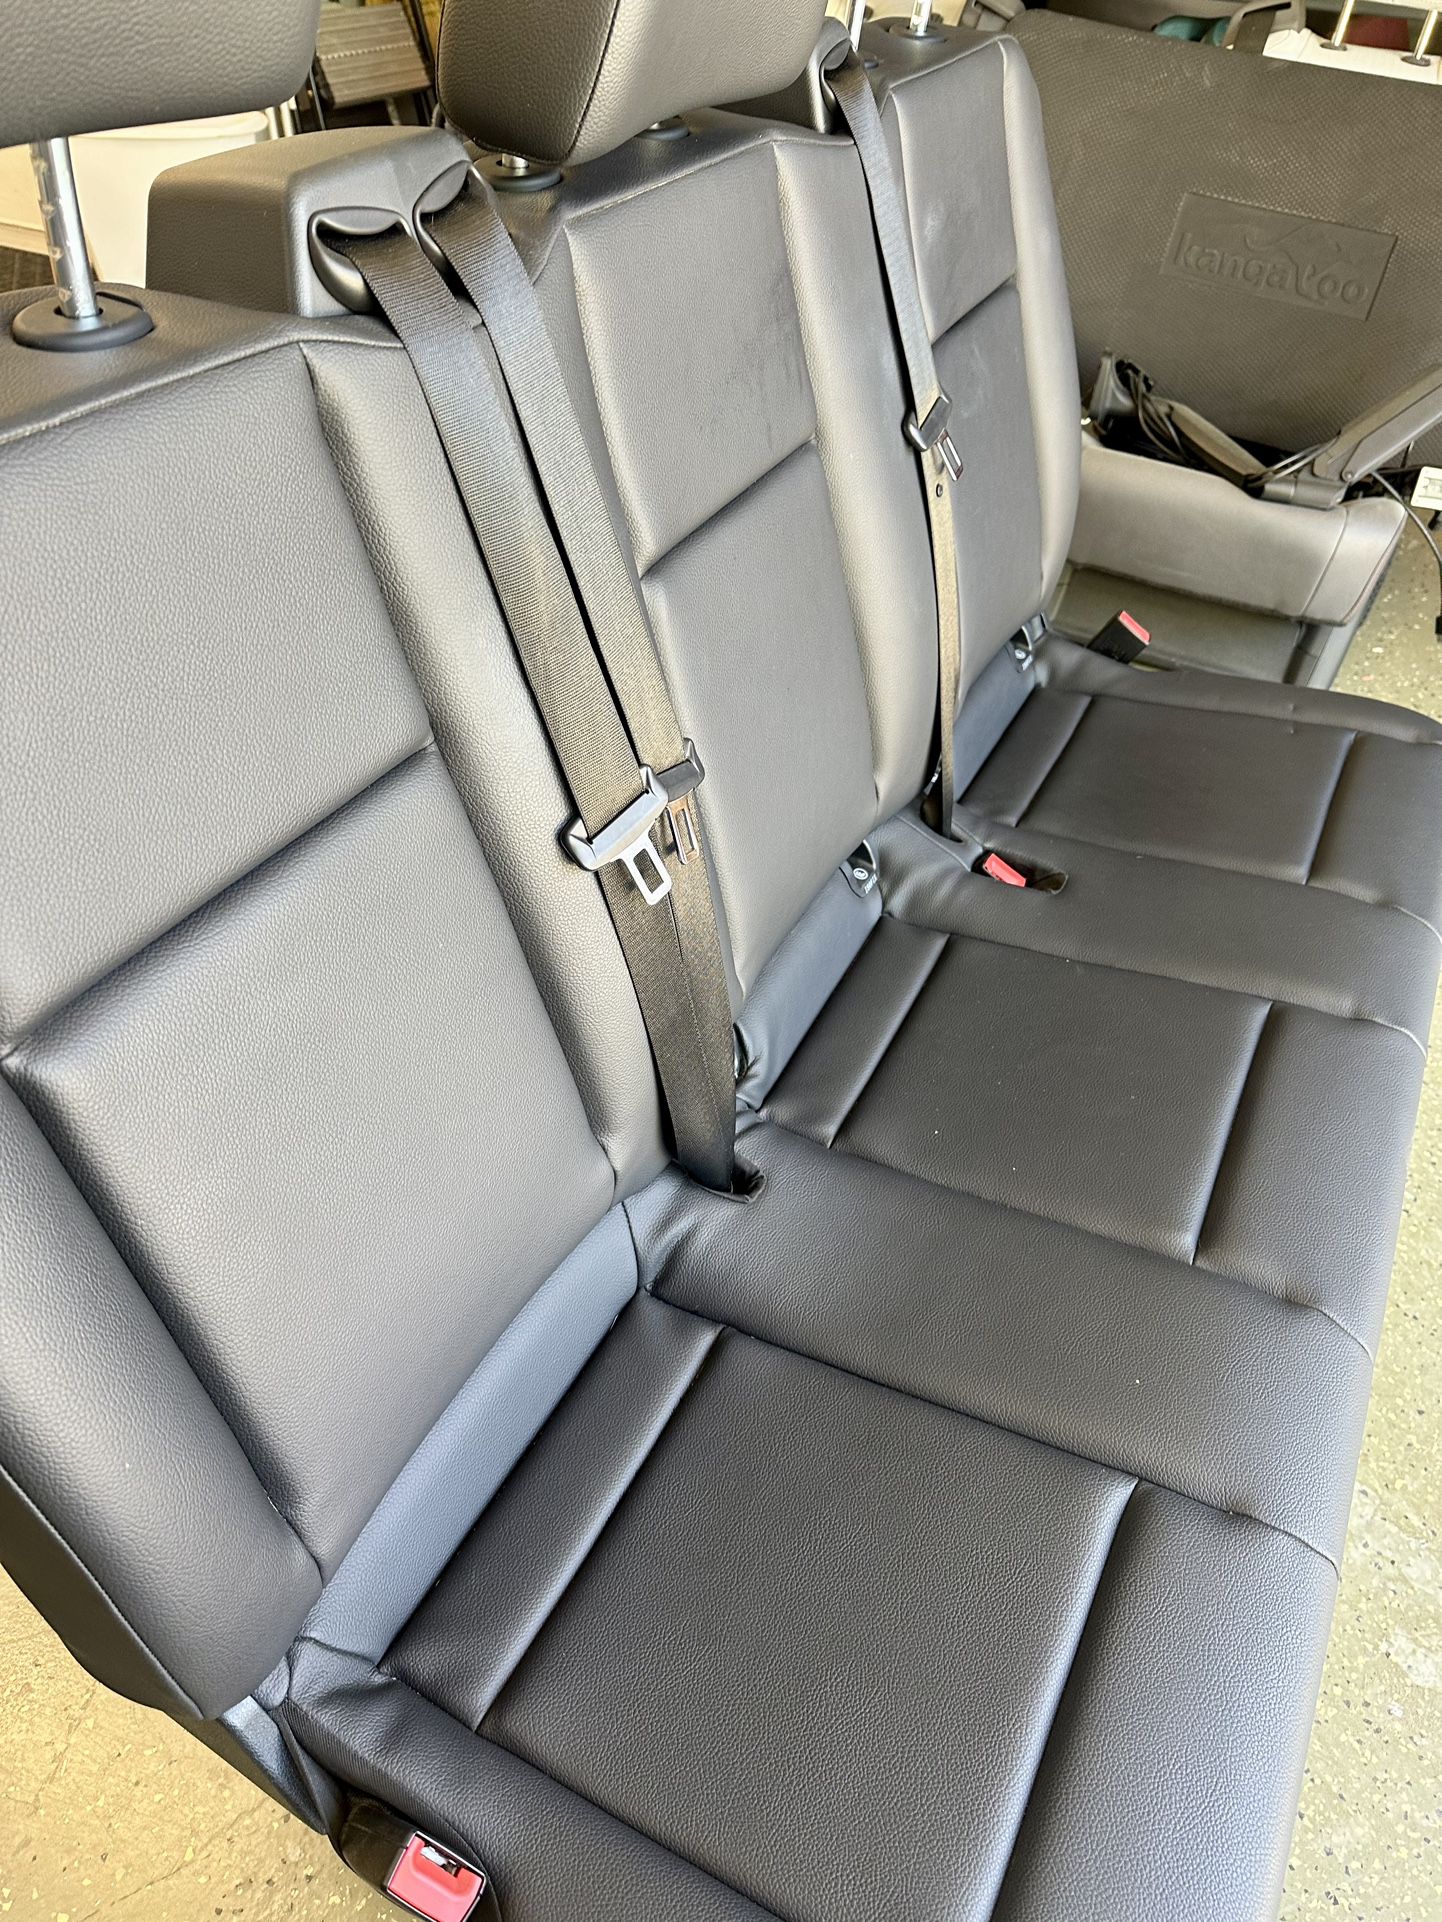 Bench Seat For Sprinter Van Works In Dodge Vans Too